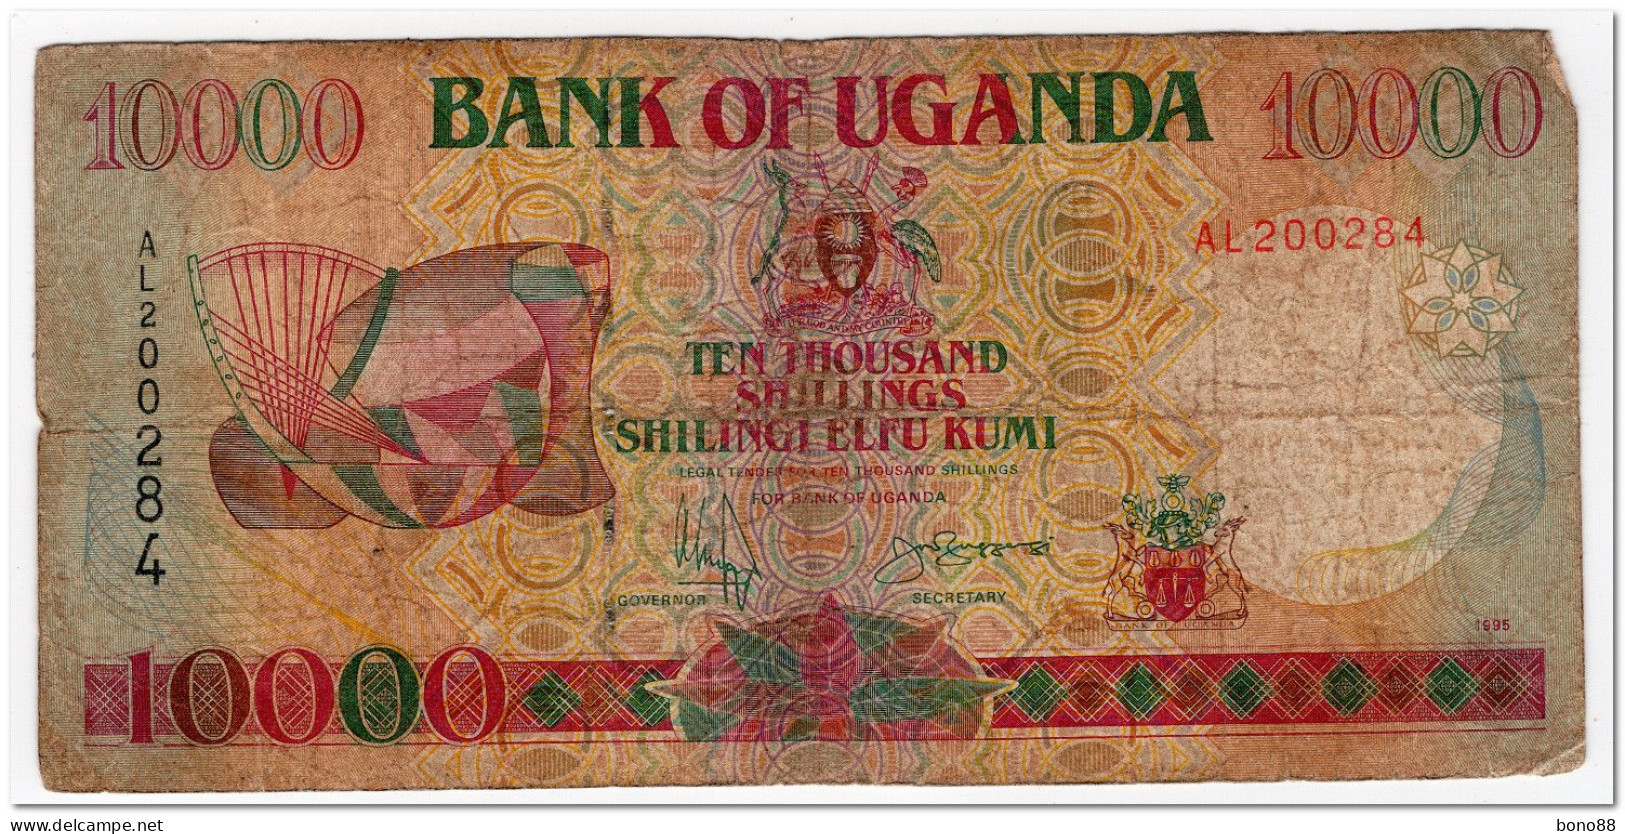 UGANDA,10000 SHILLINGS,1998,P.38b,CIRCULATED,SMALL TEARS - Uganda